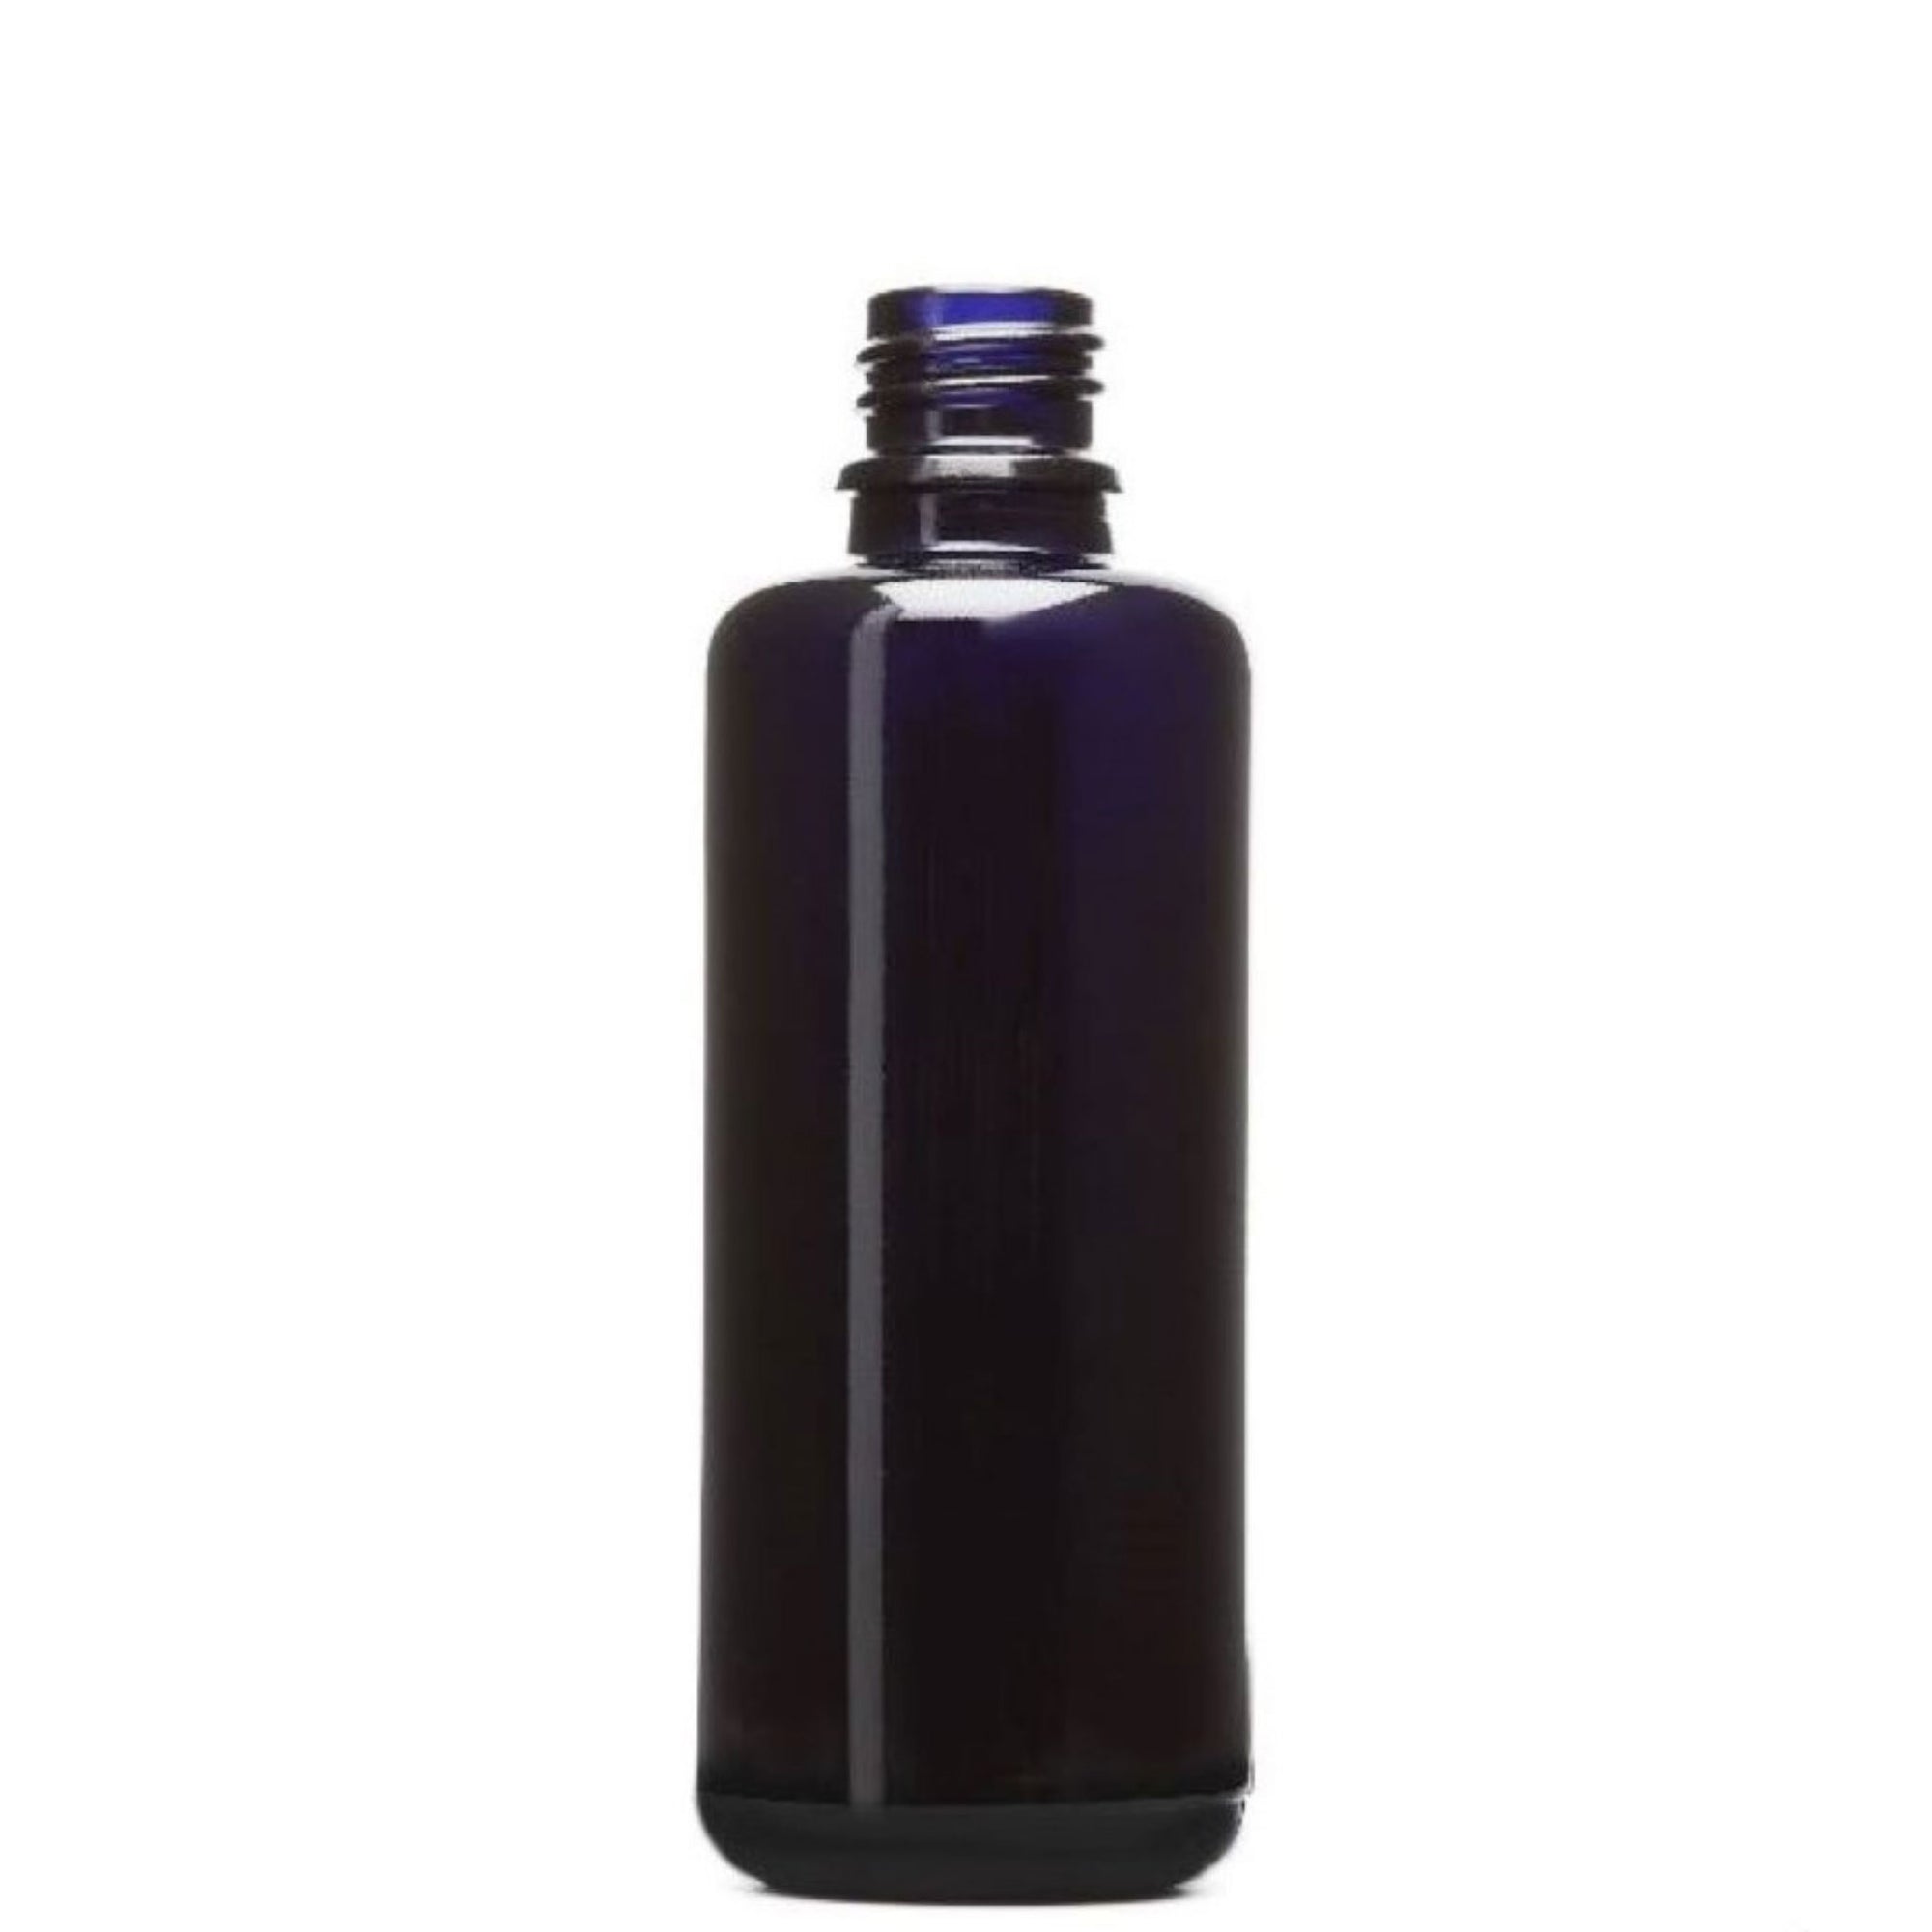 Violettglasflasche gross Naturkosmetik Zubehör oelfaktorisch 